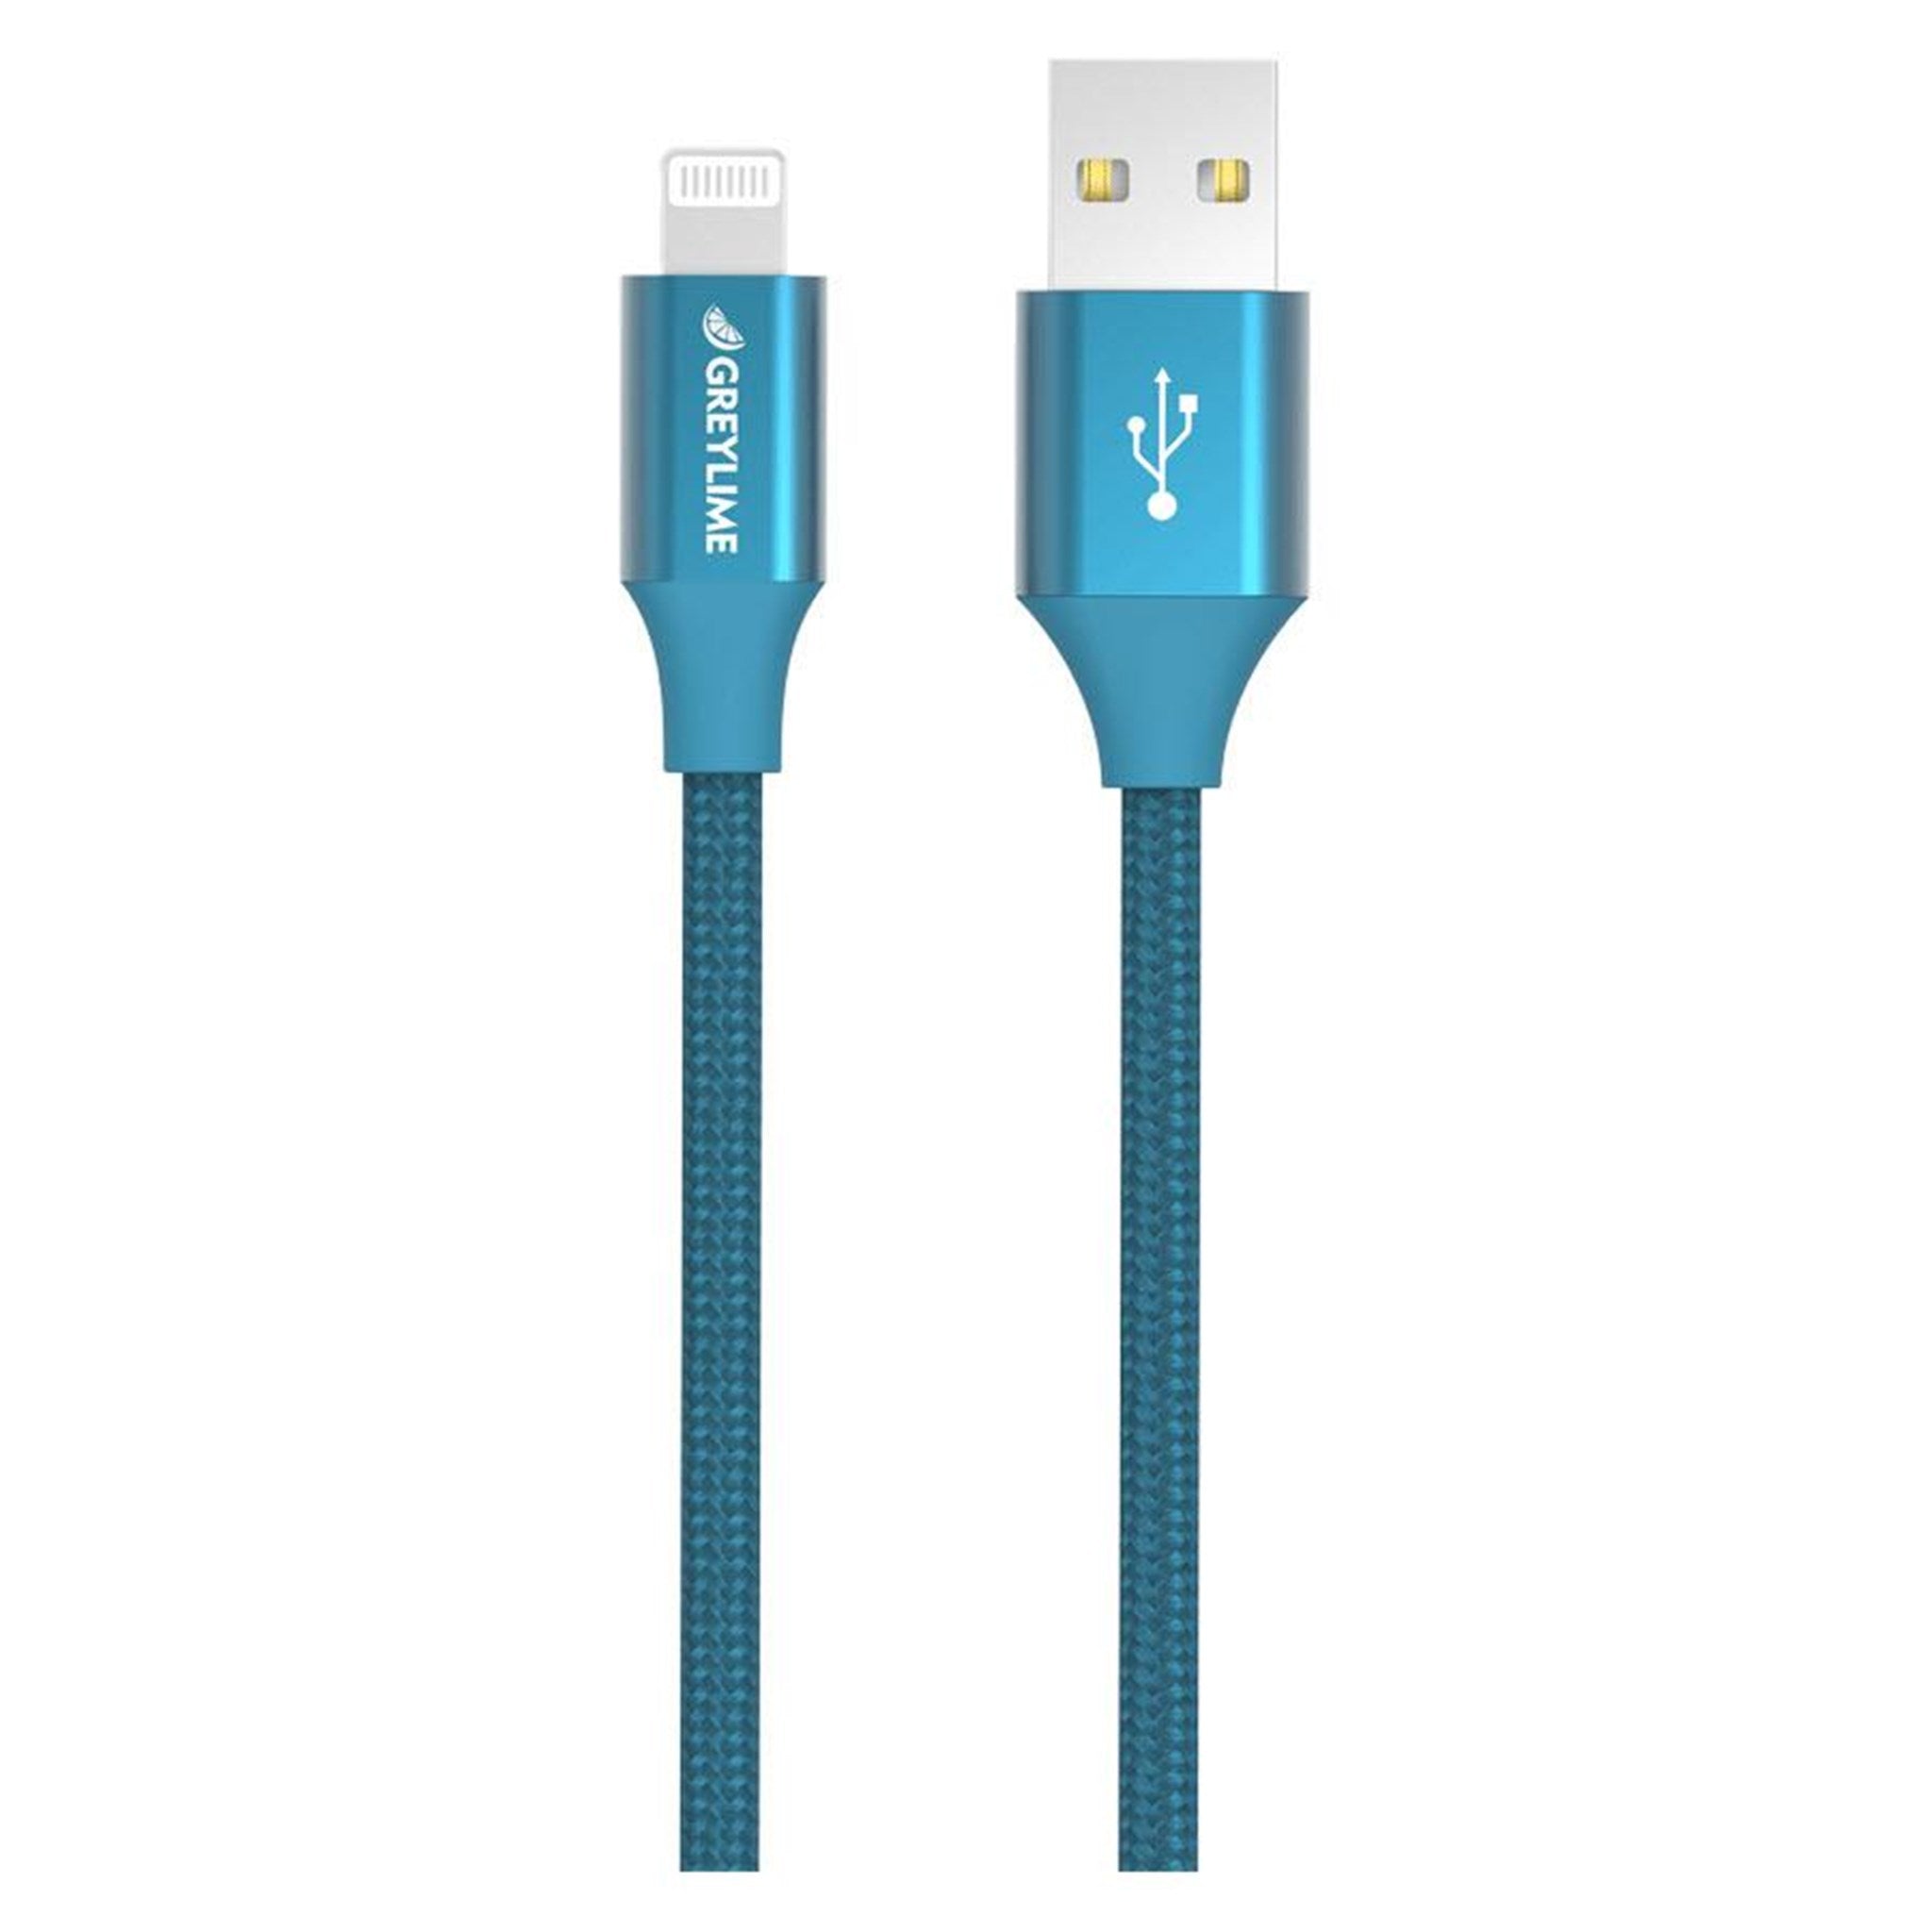 Billede af GreyLime Braided USB-A til MFi Lightning Kabel Blå 1 m hos GreyLime